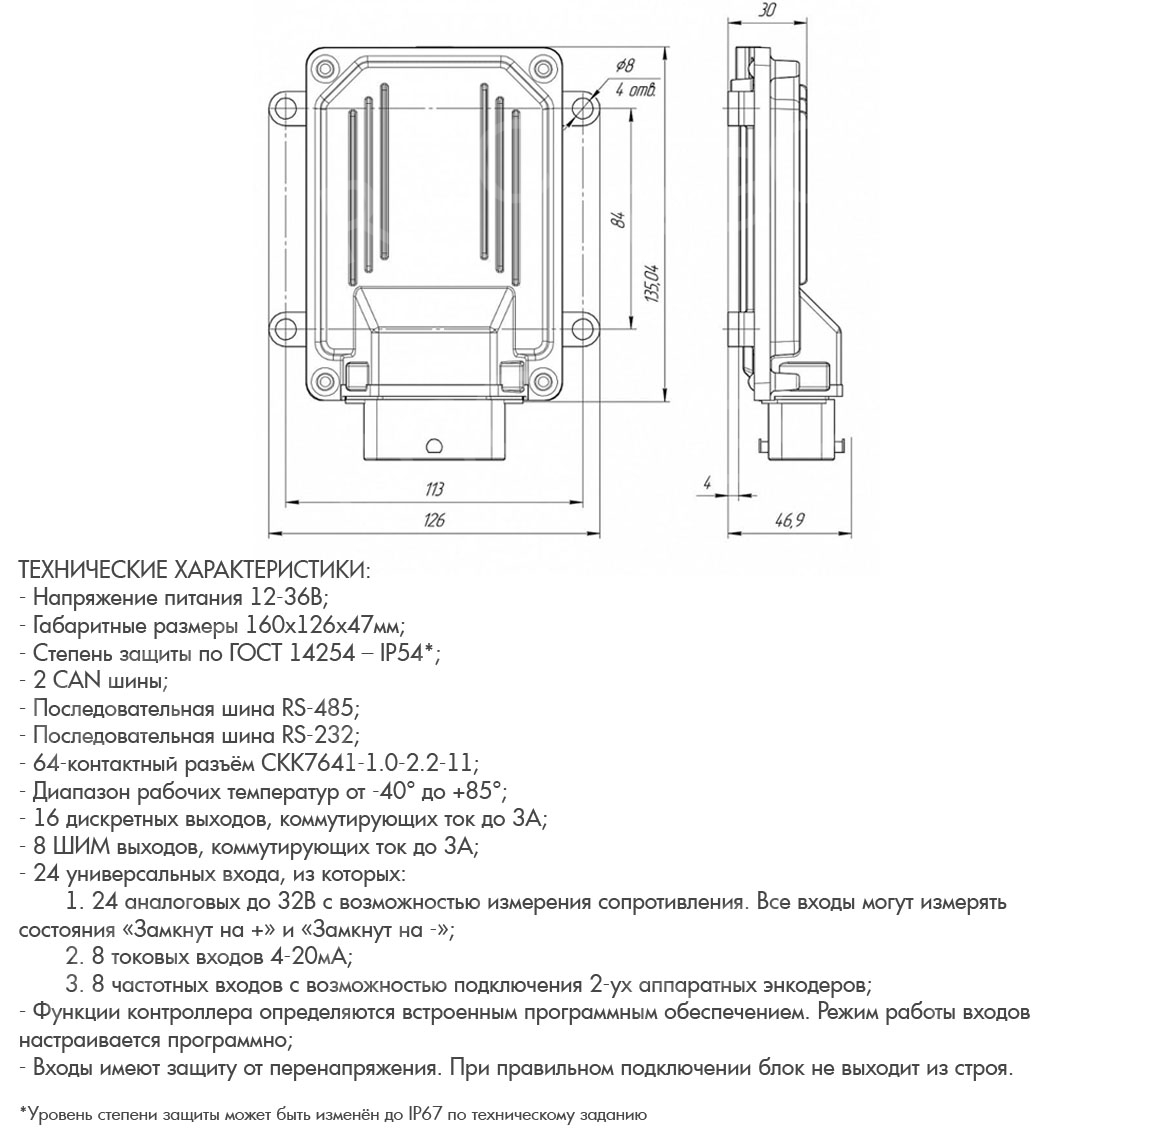 Контроллер РГ-БУК-33-01 чертеж.jpg